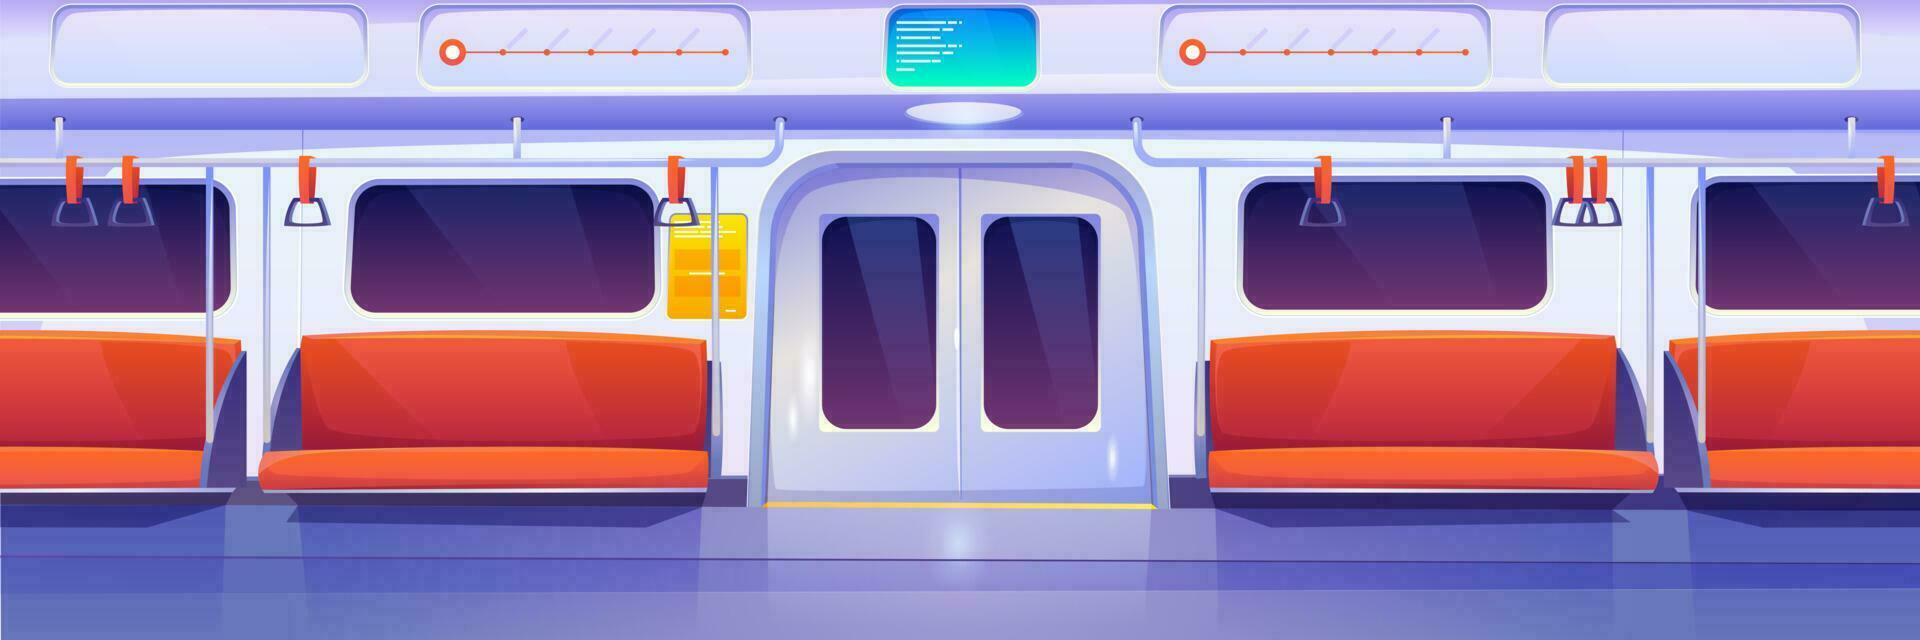 tunnelbana tåg bil, metro vagn interiör vektor